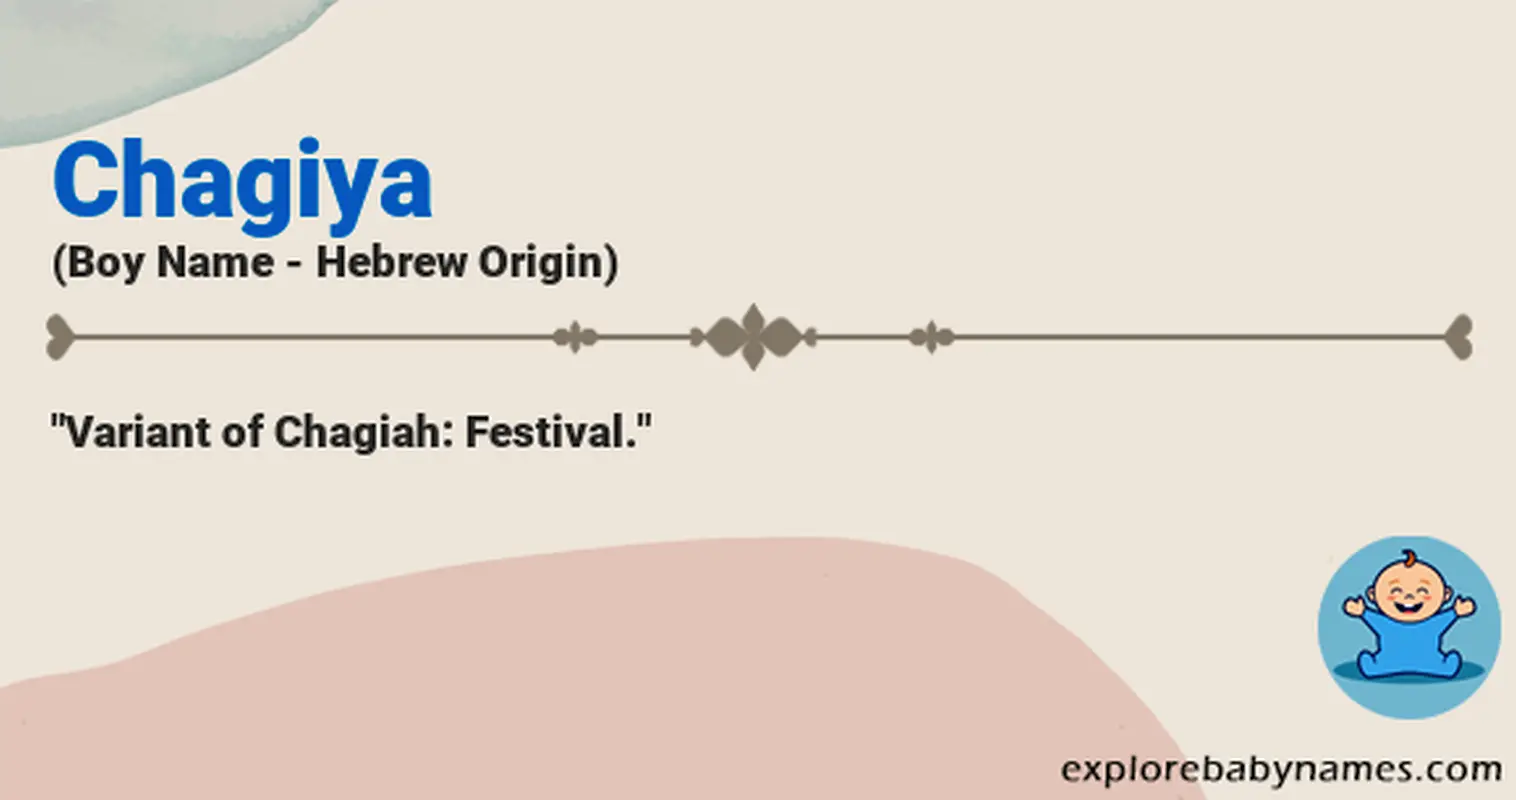 Meaning of Chagiya